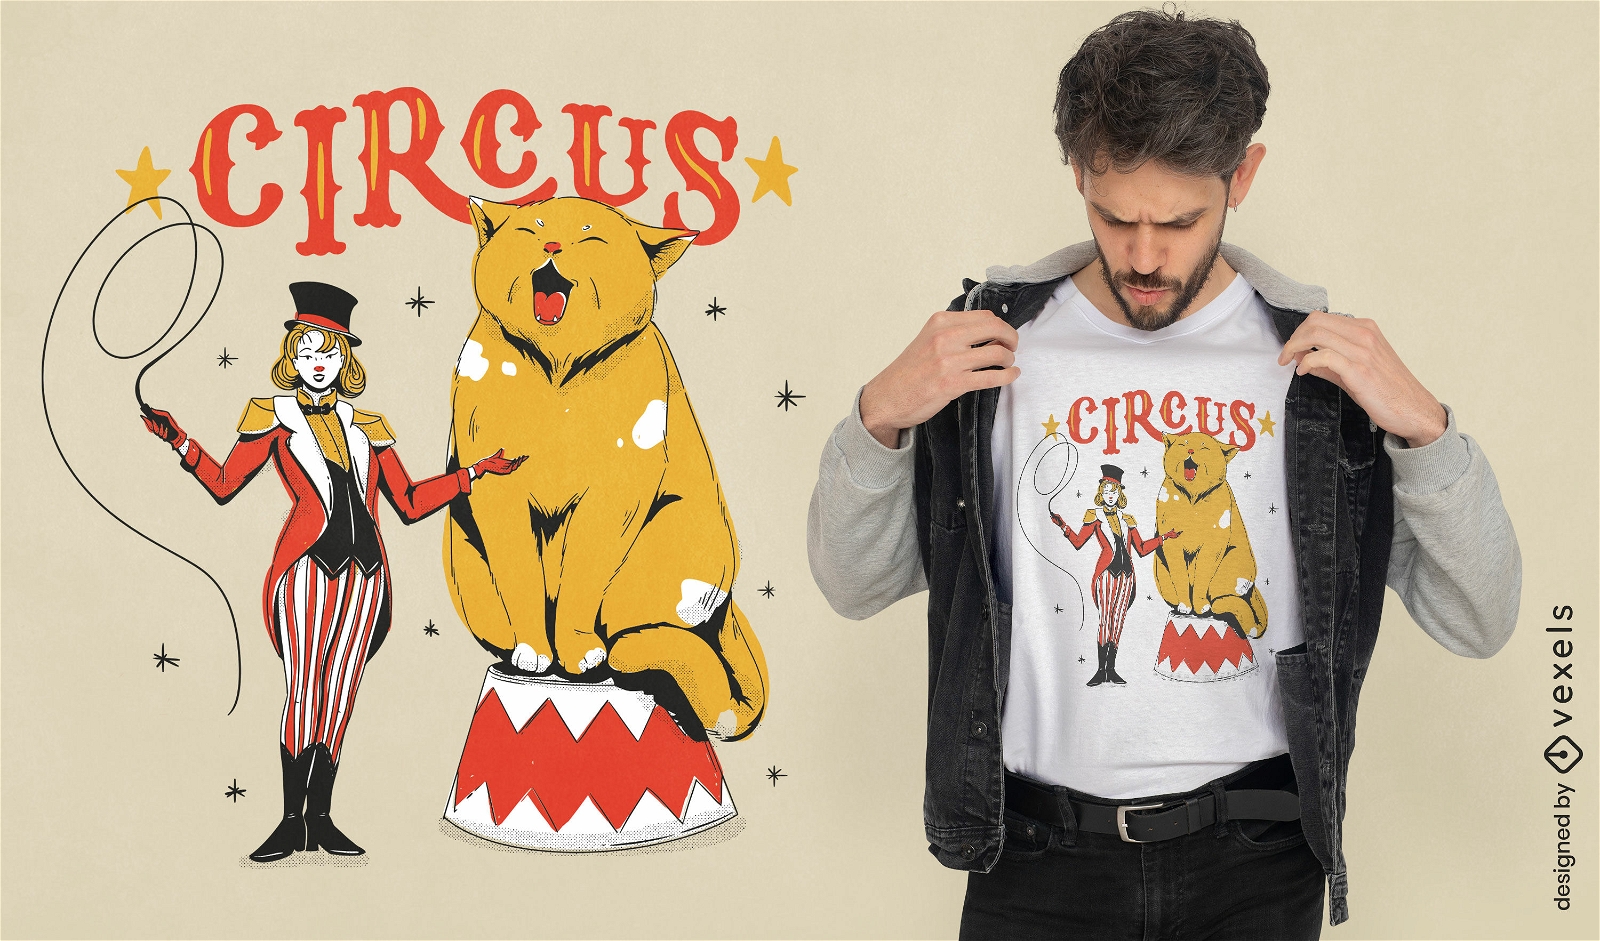 Animal gato gigante en diseño de camiseta de circo.